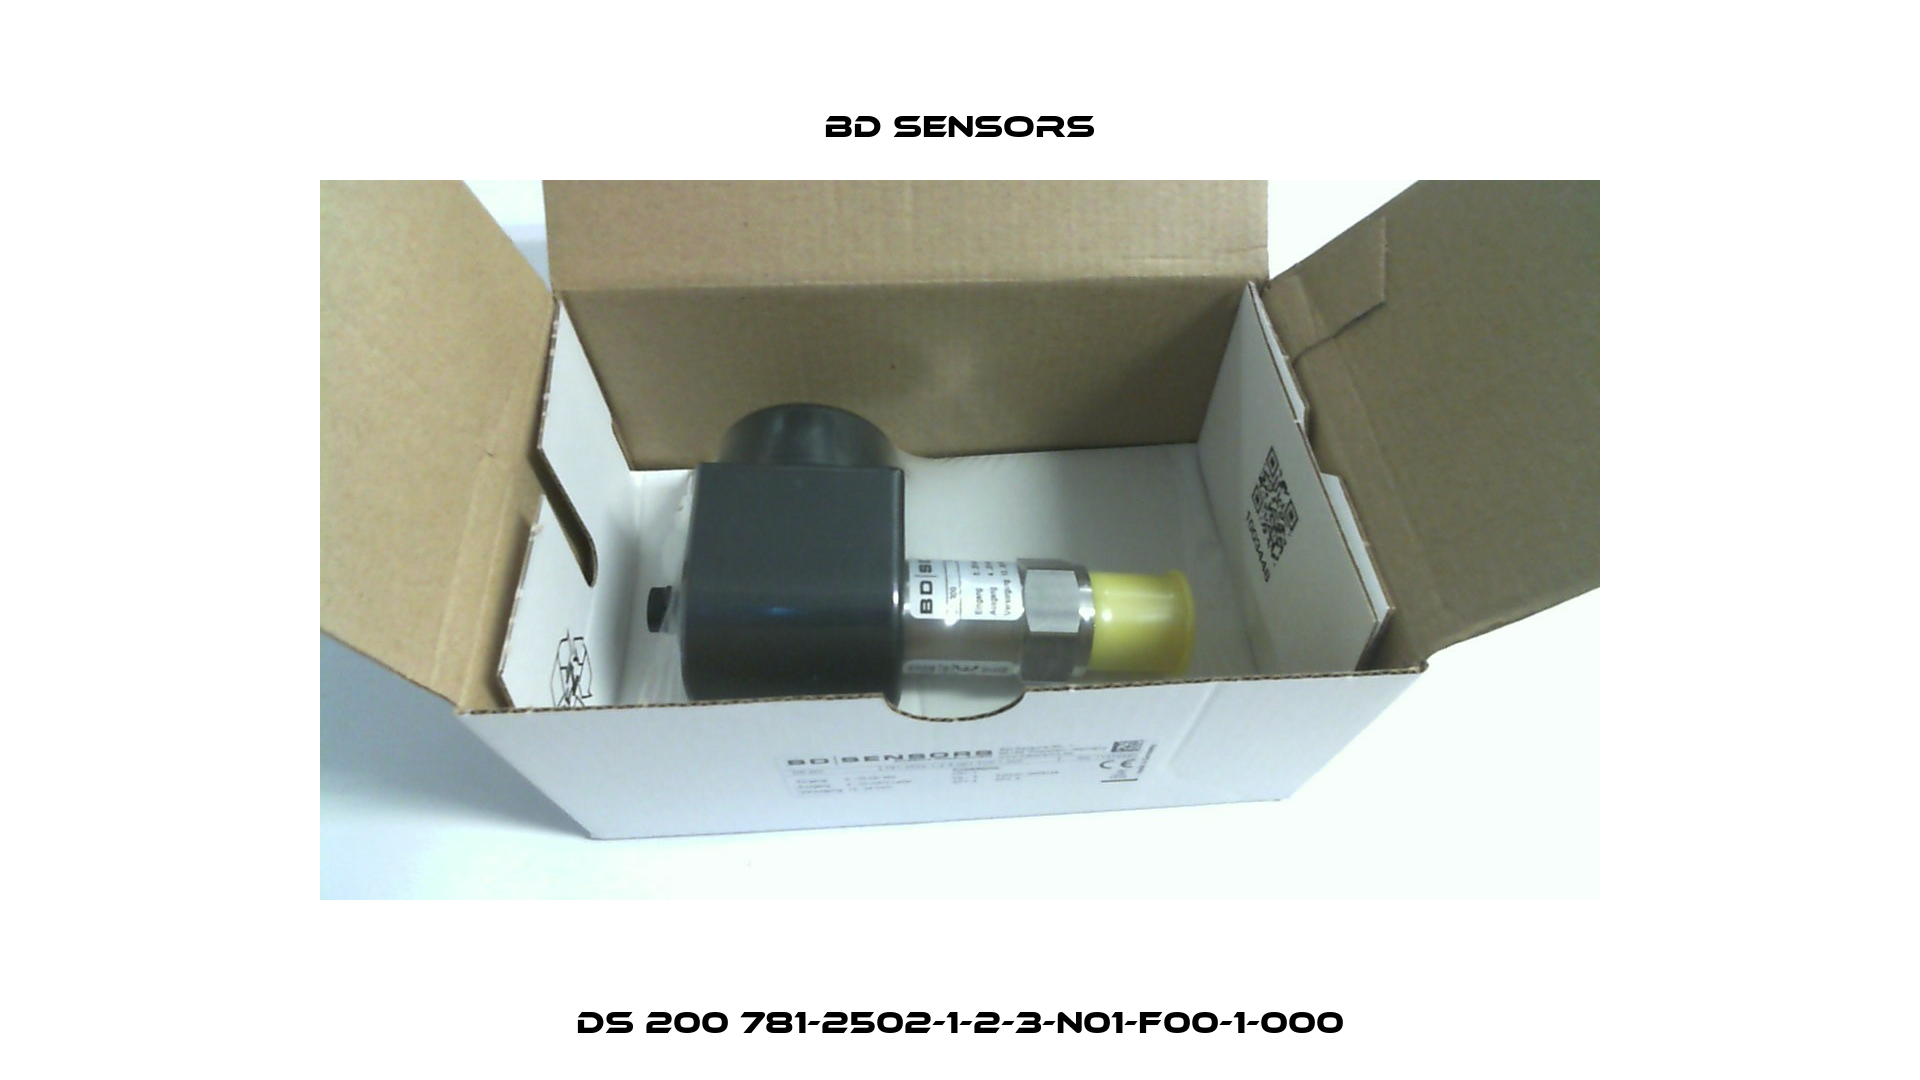 DS 200 781-2502-1-2-3-N01-F00-1-000 Bd Sensors